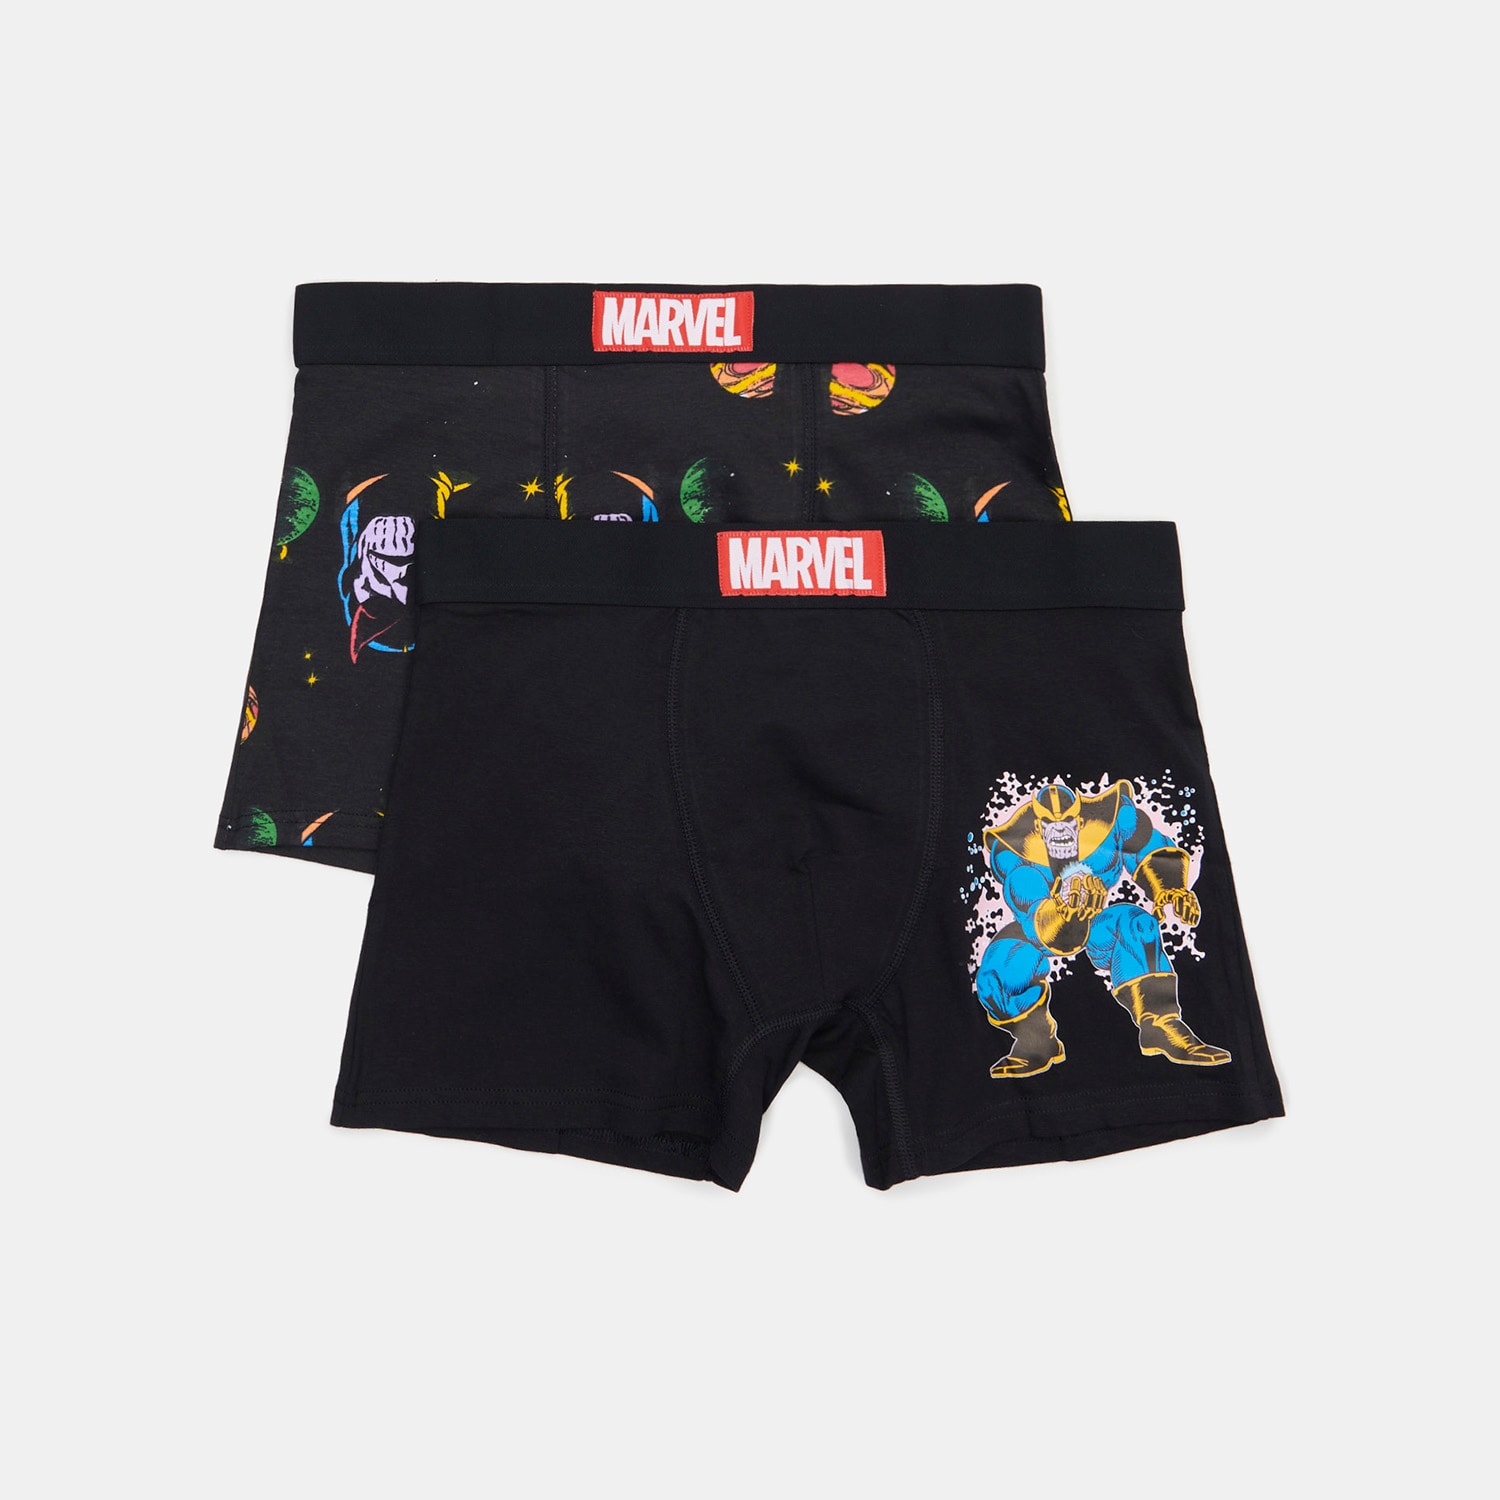 Poze Set de 2 perechi de boxeri Marvel - Multicolor sinsay.com/ro 